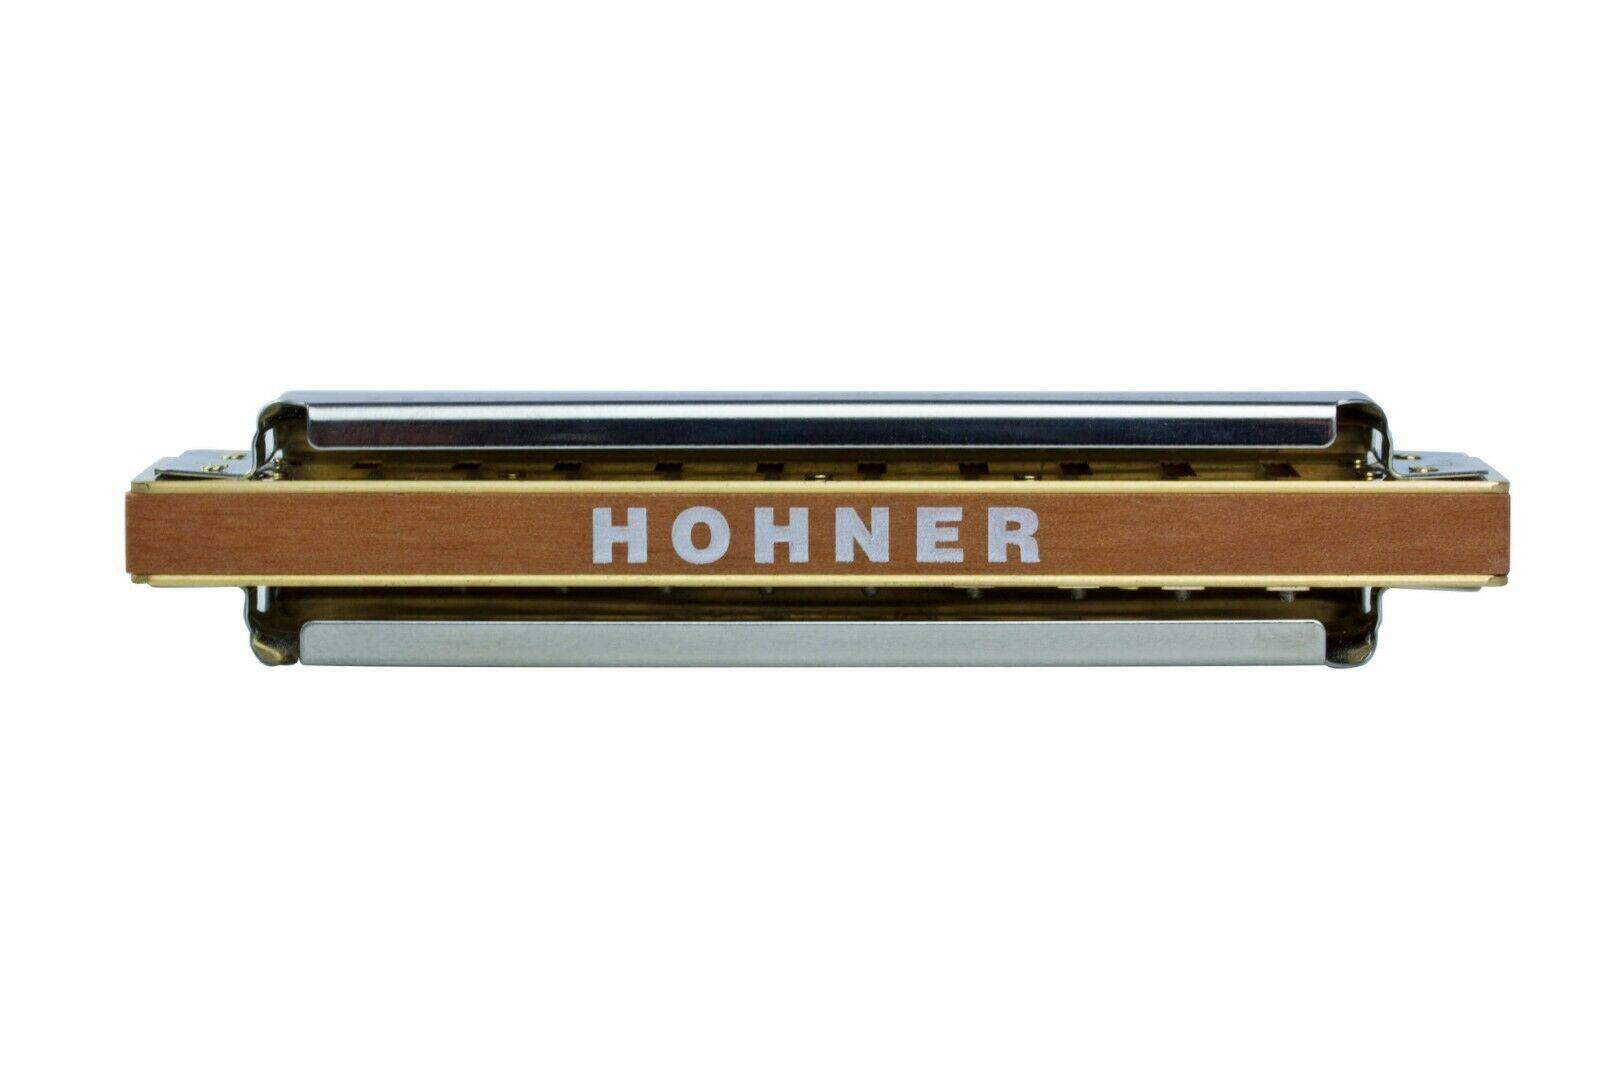 Hohner - Armónica Marine Band Deluxe en La Mayor Mod.M200510X_37